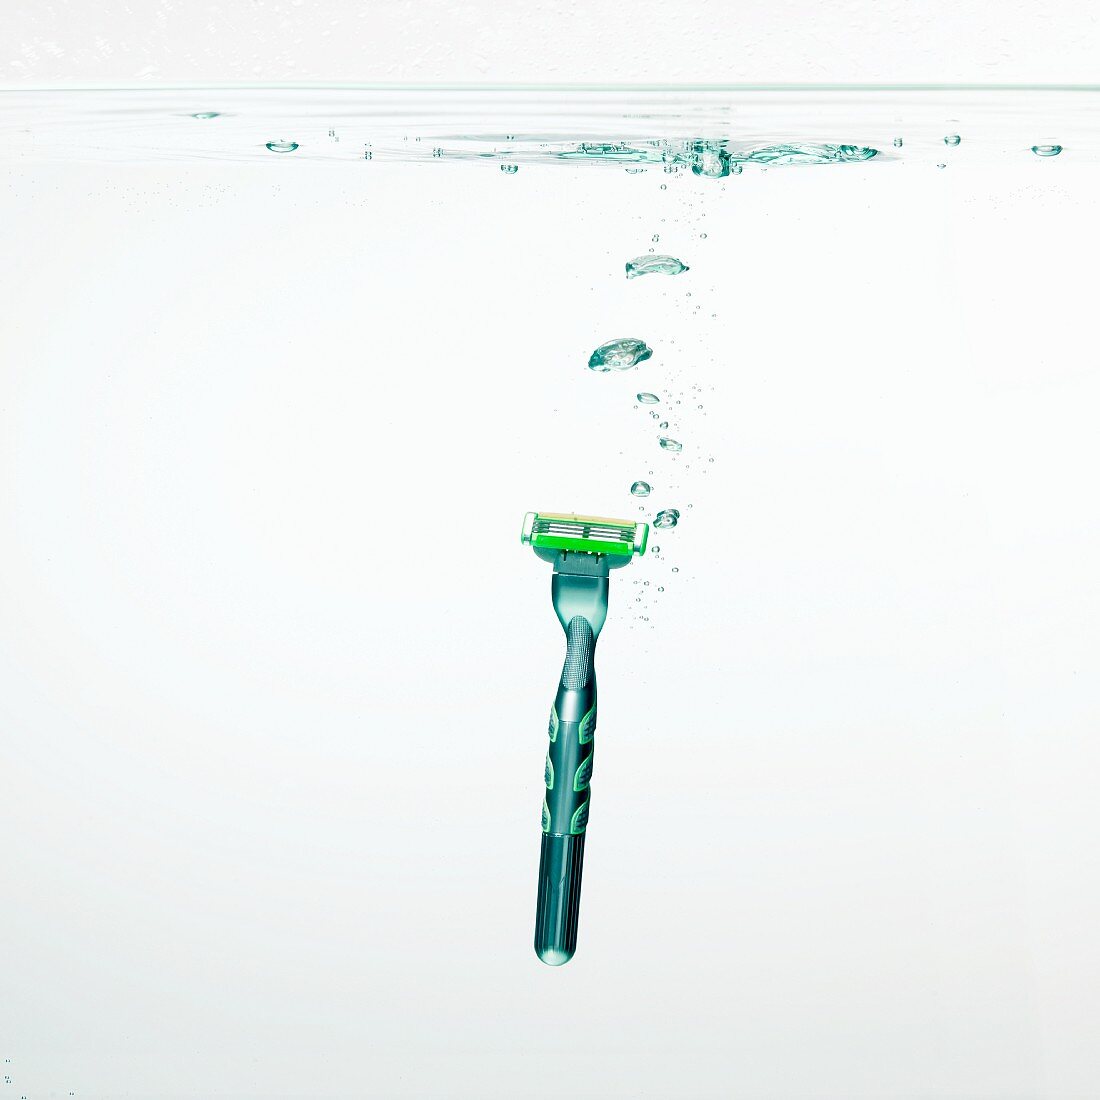 A razor under water